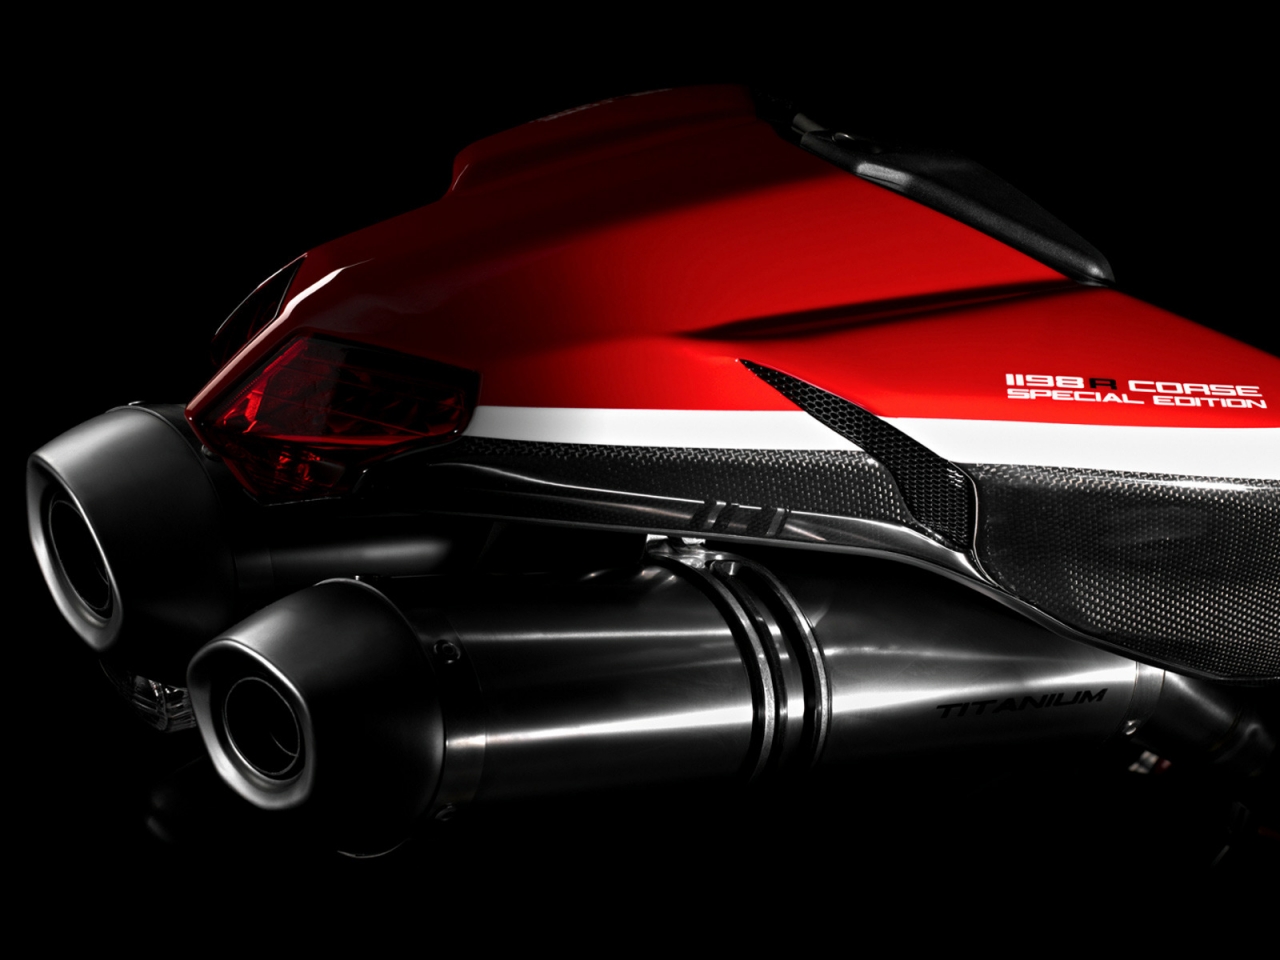 Ducati Superbike-1198-R-Corse Rear for 1280 x 960 resolution